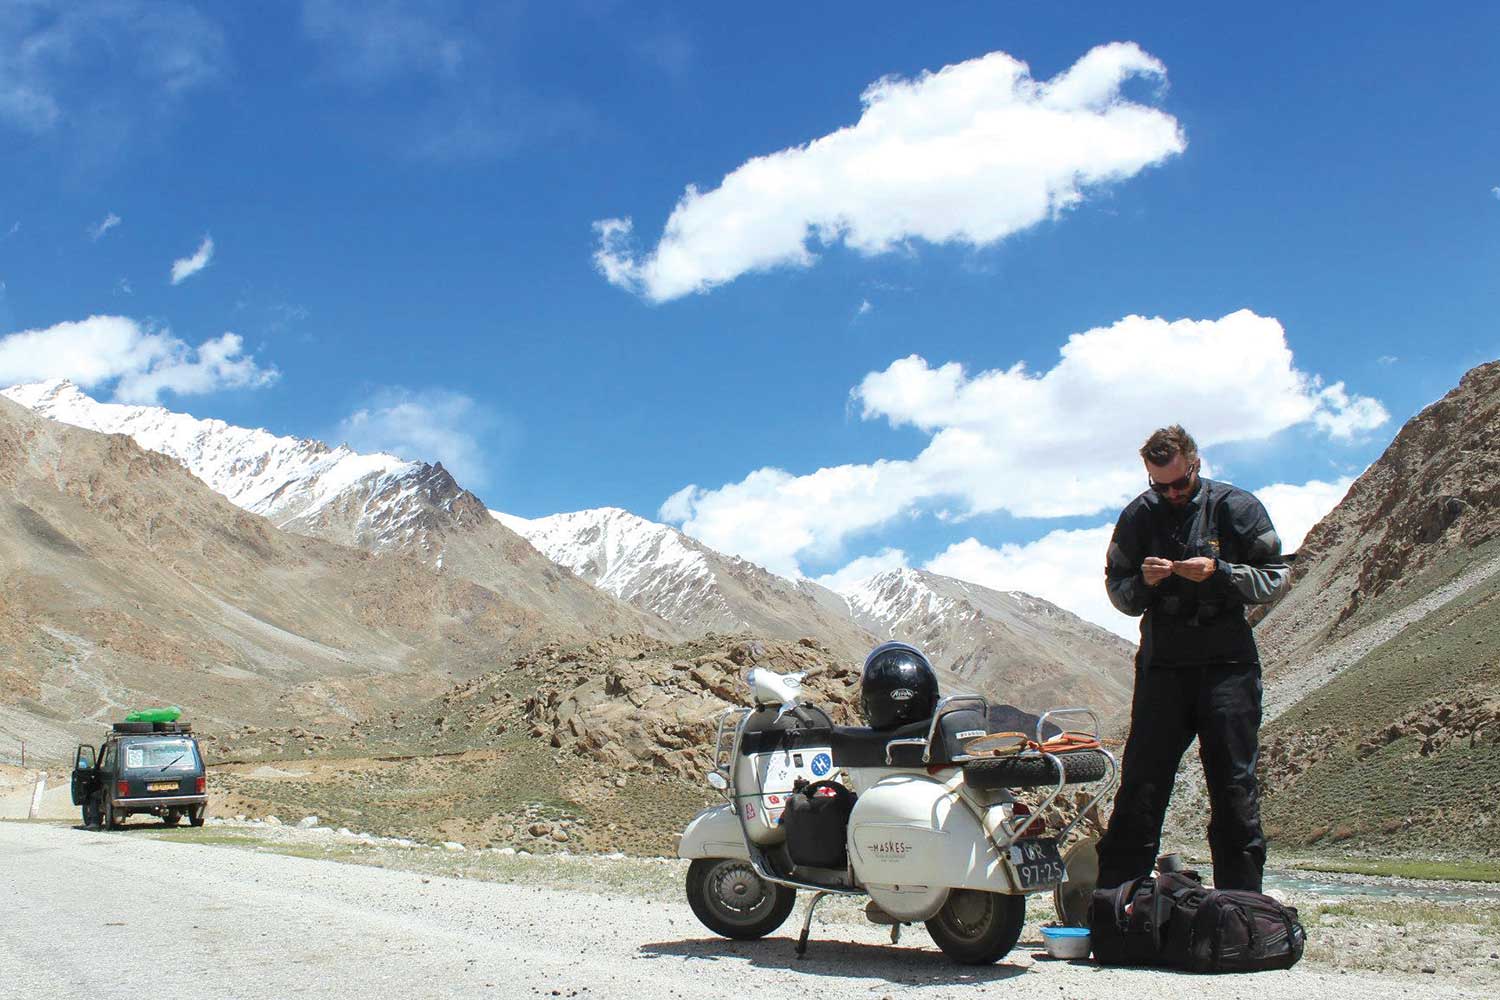 Laurens de Rijke doing maintenance on his Vespa bike along the Pamir Highway, Tajikistan.